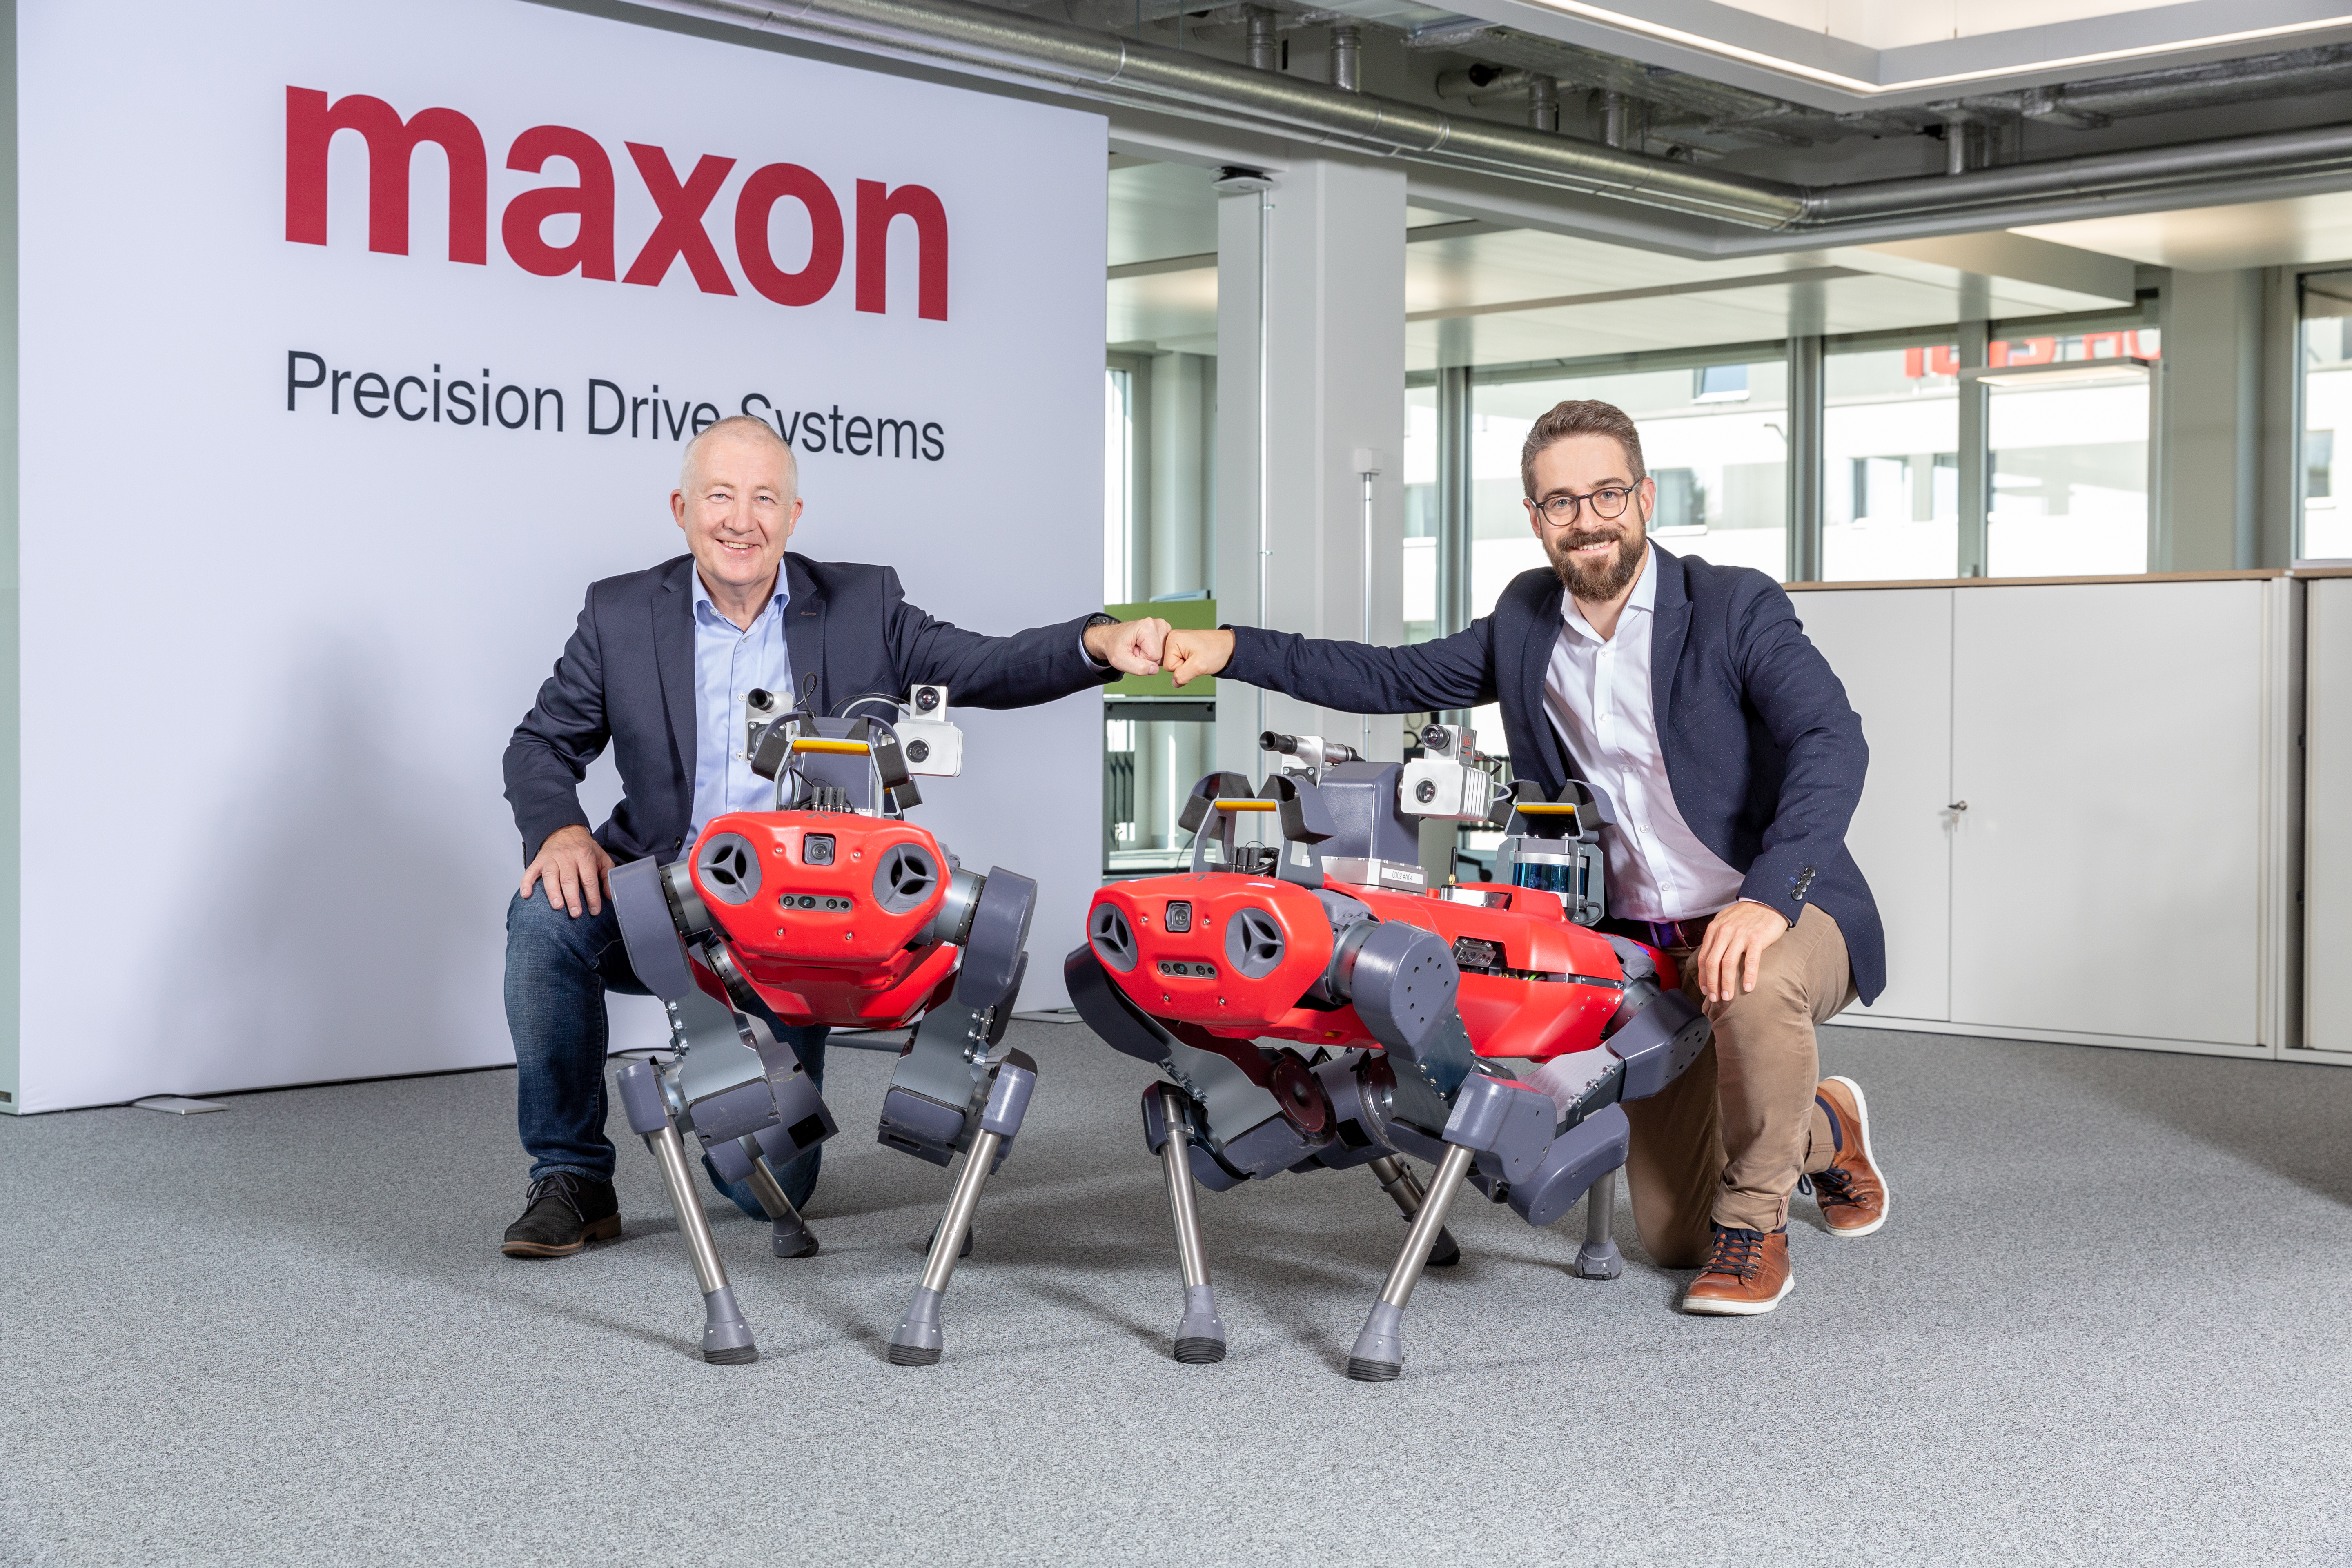 스위스 드라이브 전문 기업 맥슨이 로봇 스타트업 애니보틱스와 협력하기로 하였습니다